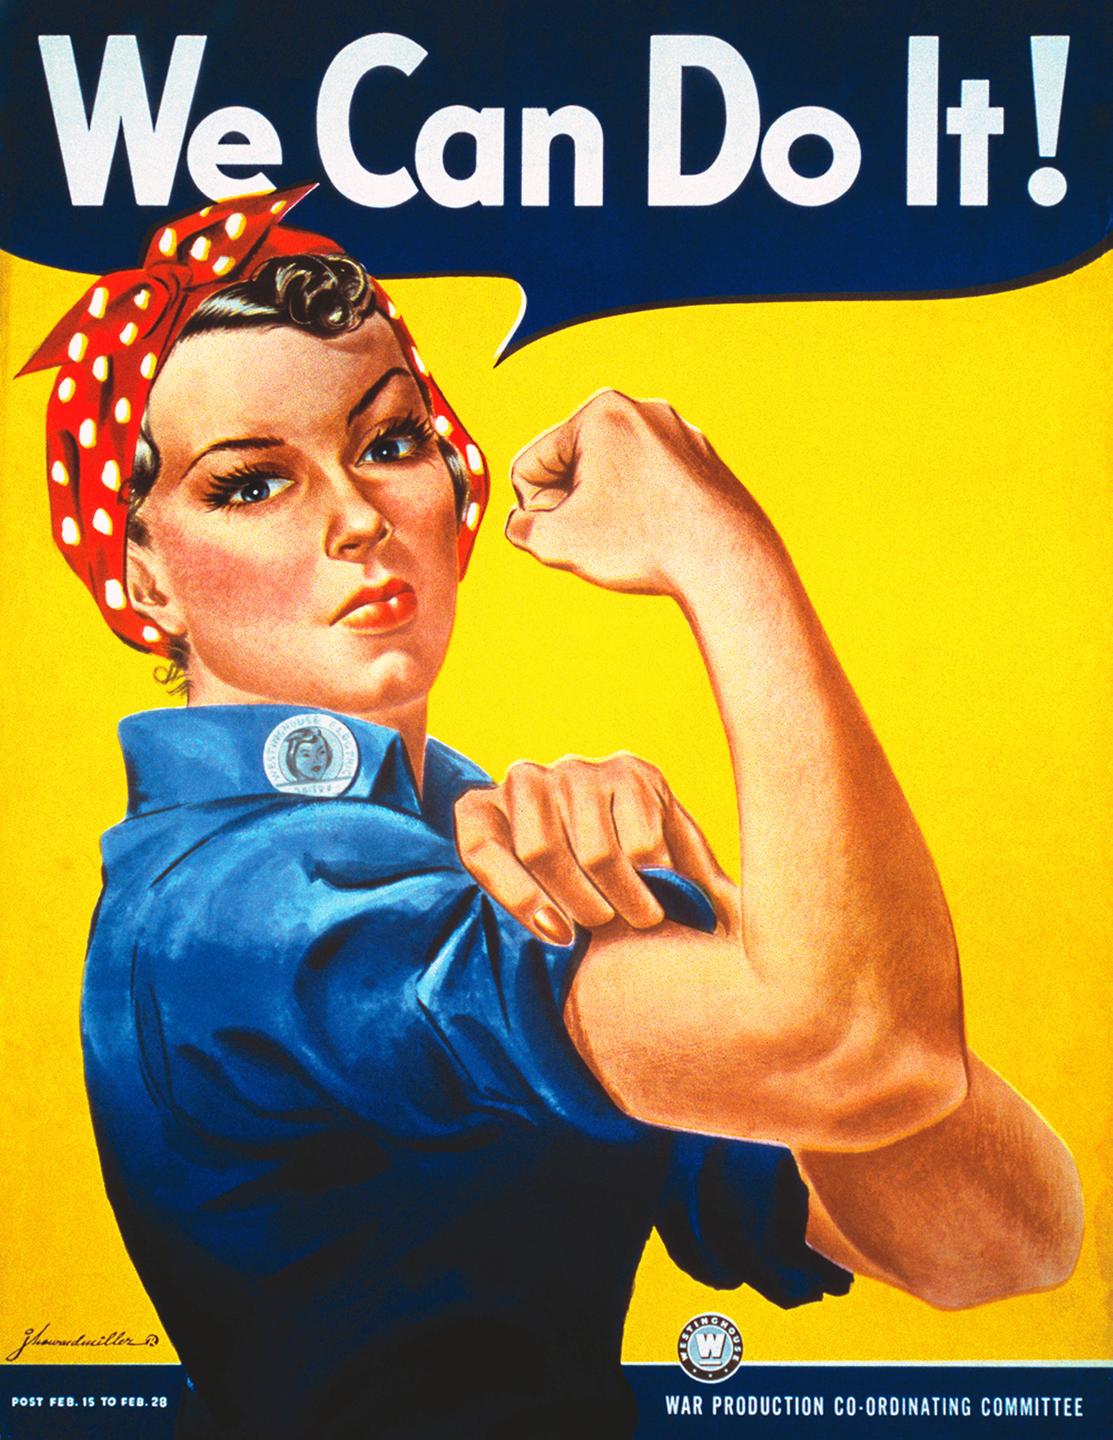 "Rosie the Riveter" gehört zu den kulturellen Ikonen der USA. Sie steht für die vielen Frauen, die während des Zweiten Weltkriegs in den Rüstungsfabriken arbeiteten. Die Frauen übernahmen dabei frühere männliche Jobs